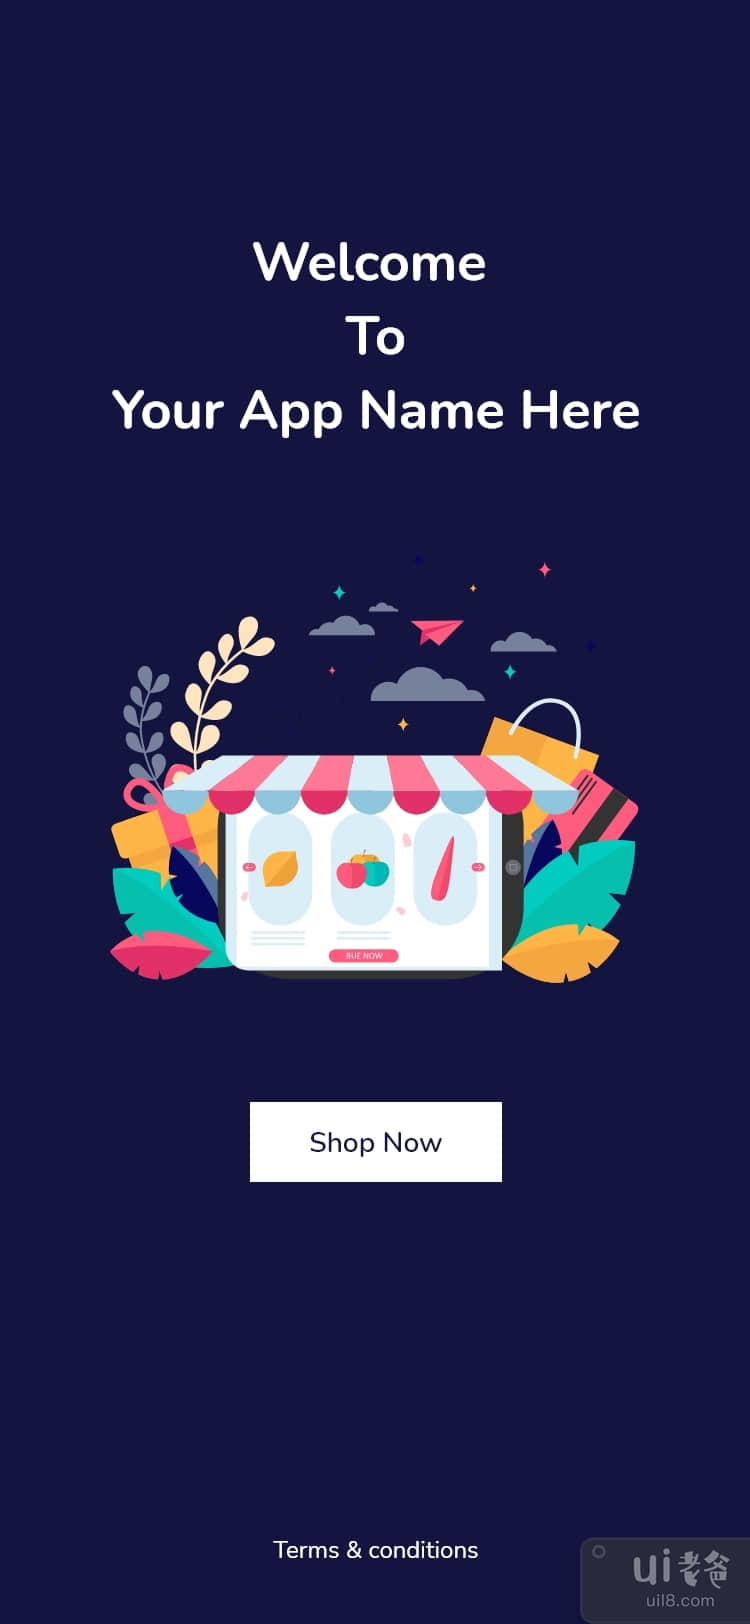 免费下载在线杂货购物应用程序 UI 工具包模板设计(Free Download Online Grocery Shopping App UI Kit Template Design)插图